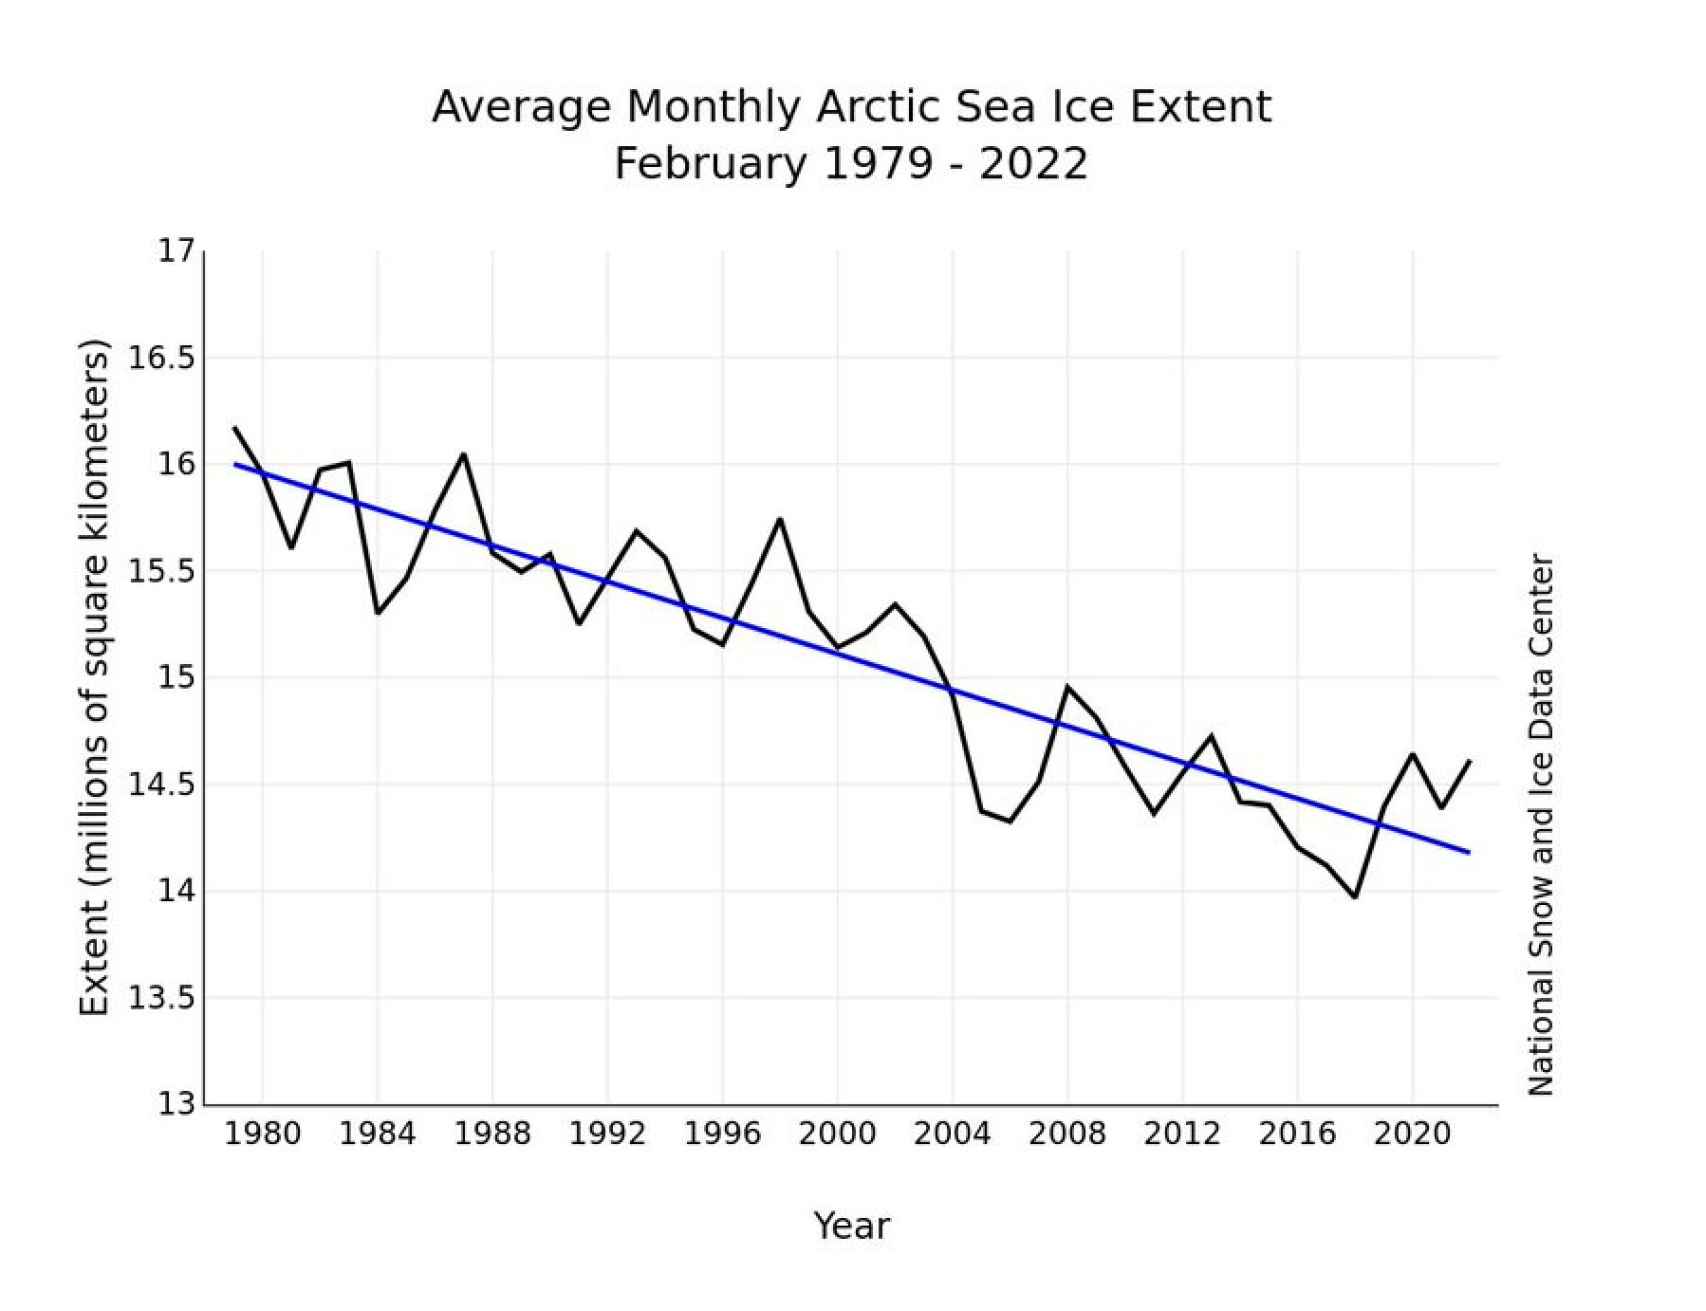 La pérdida del hielo anual en el Ártico desde 1979 hasta 2020.